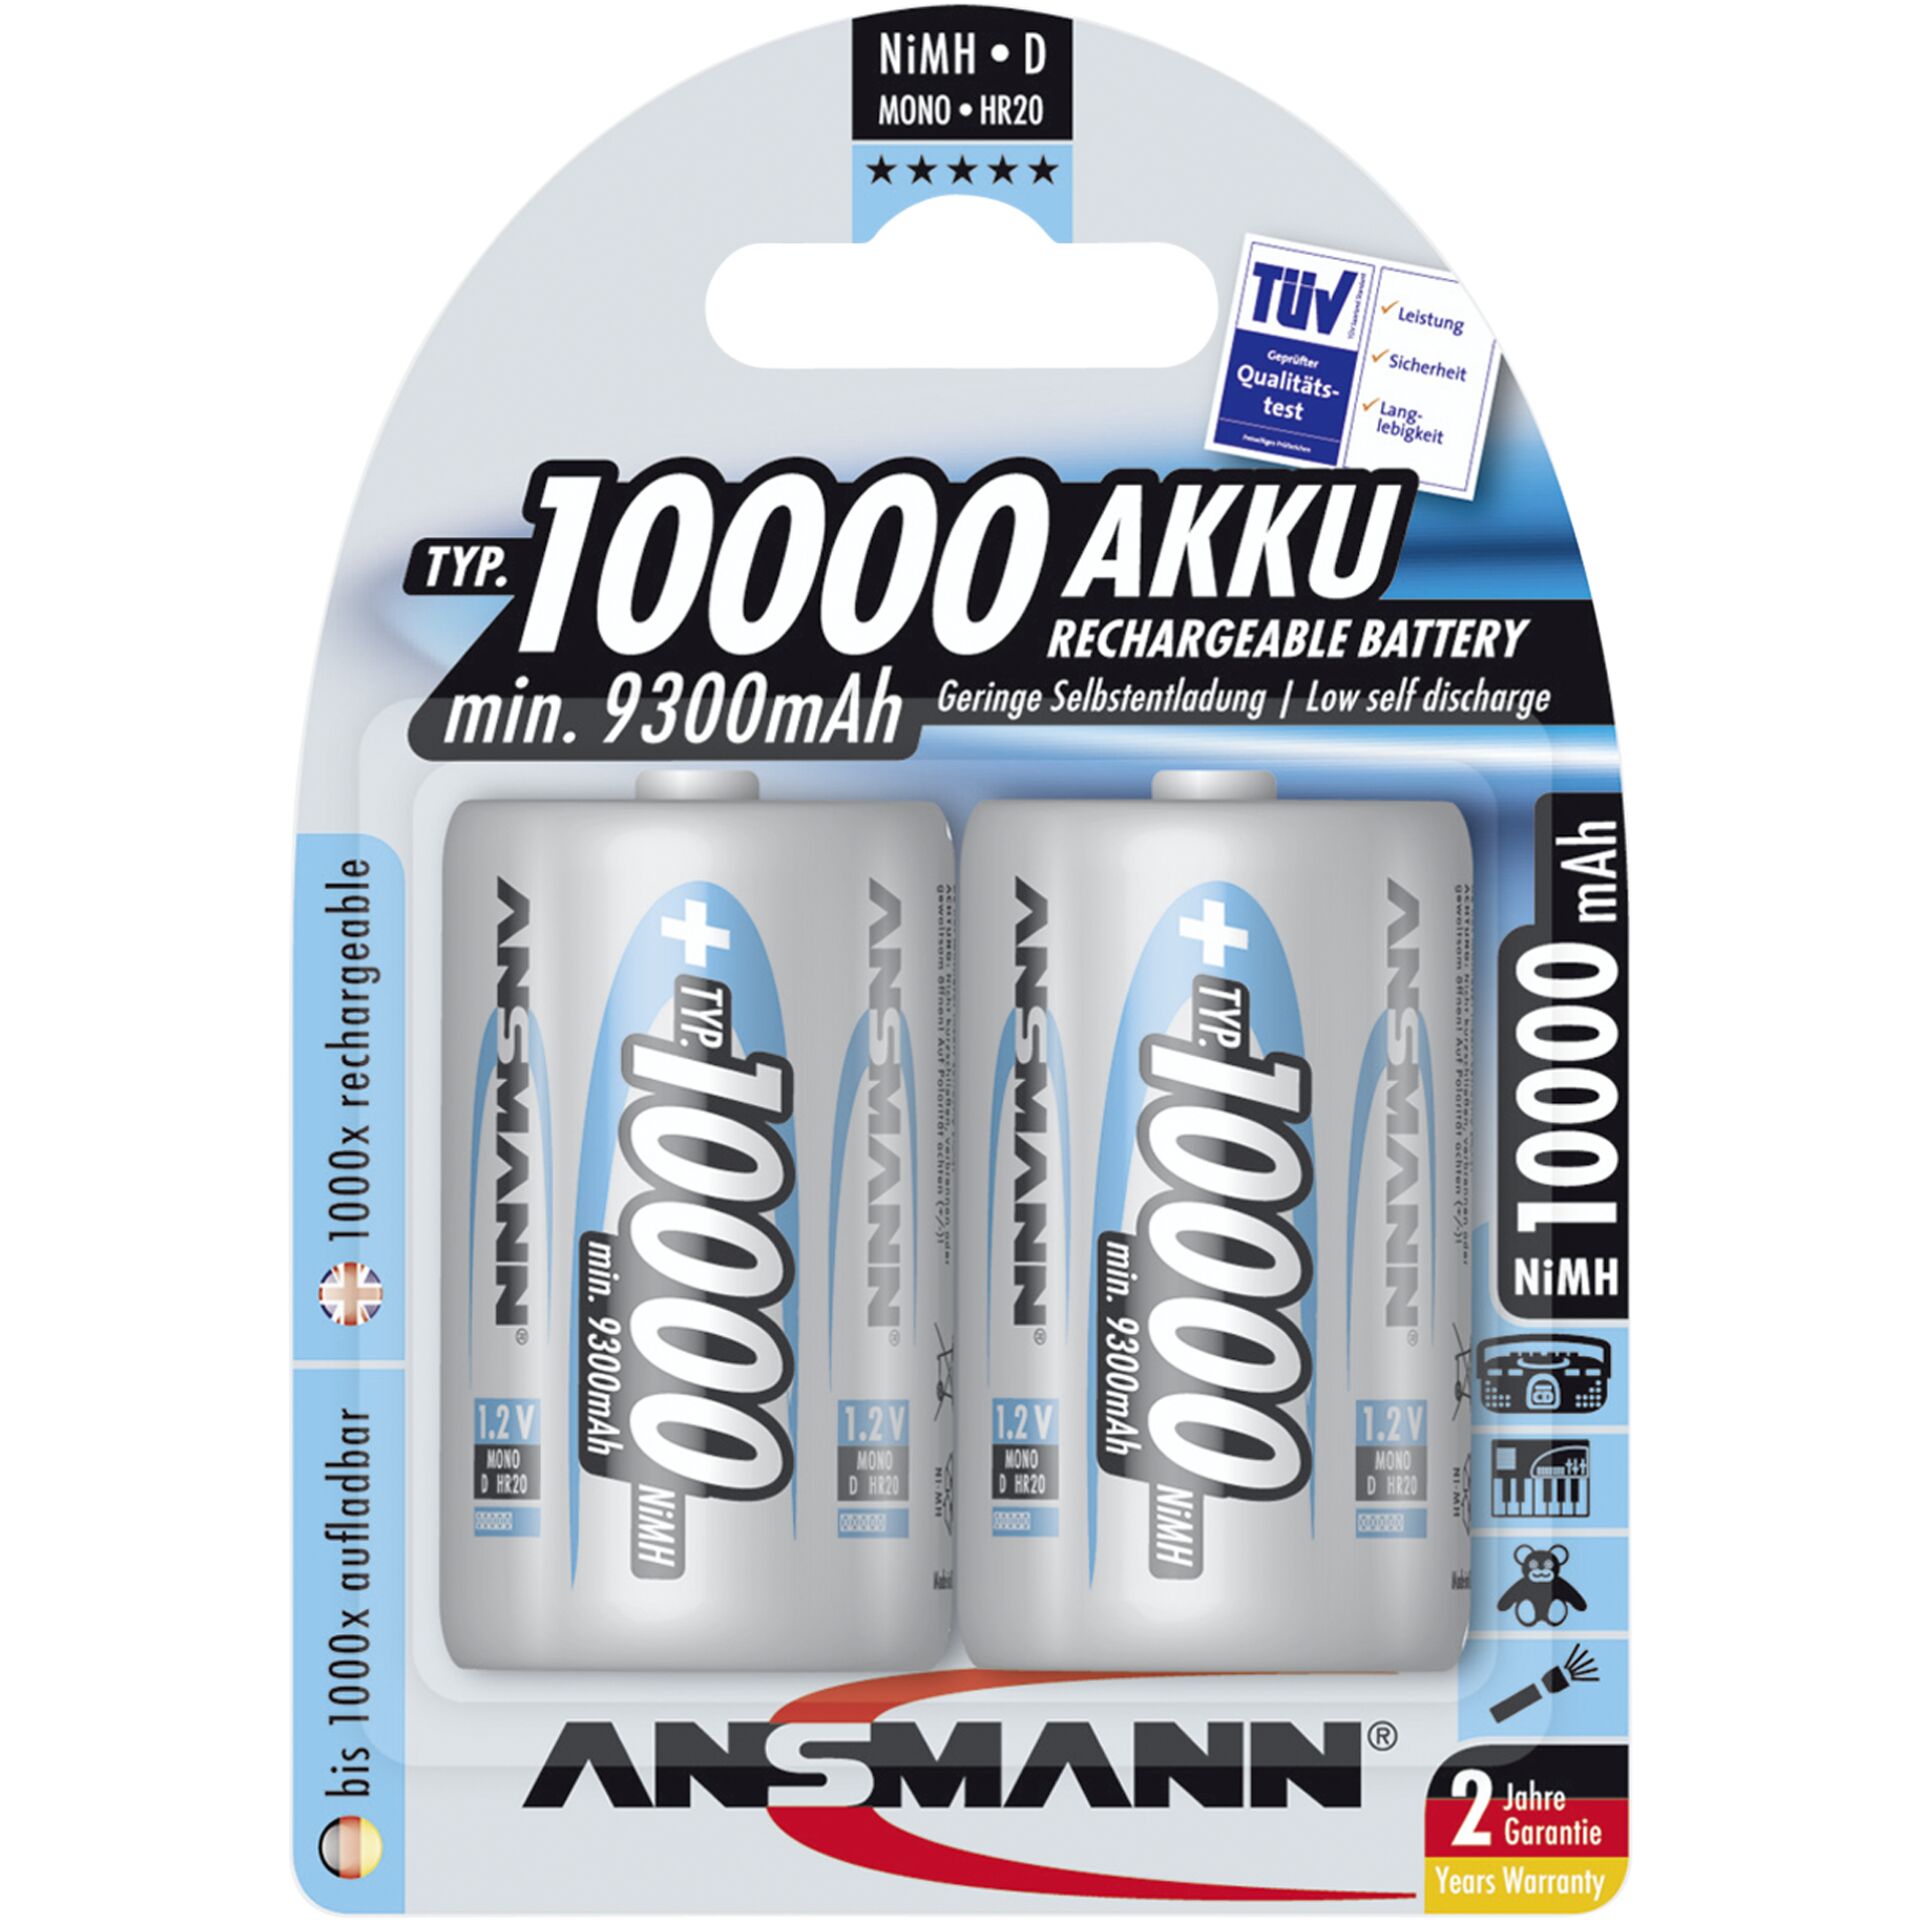 1x2 Ansmann NiMH batteria 10000 Mono D 9300 mAh